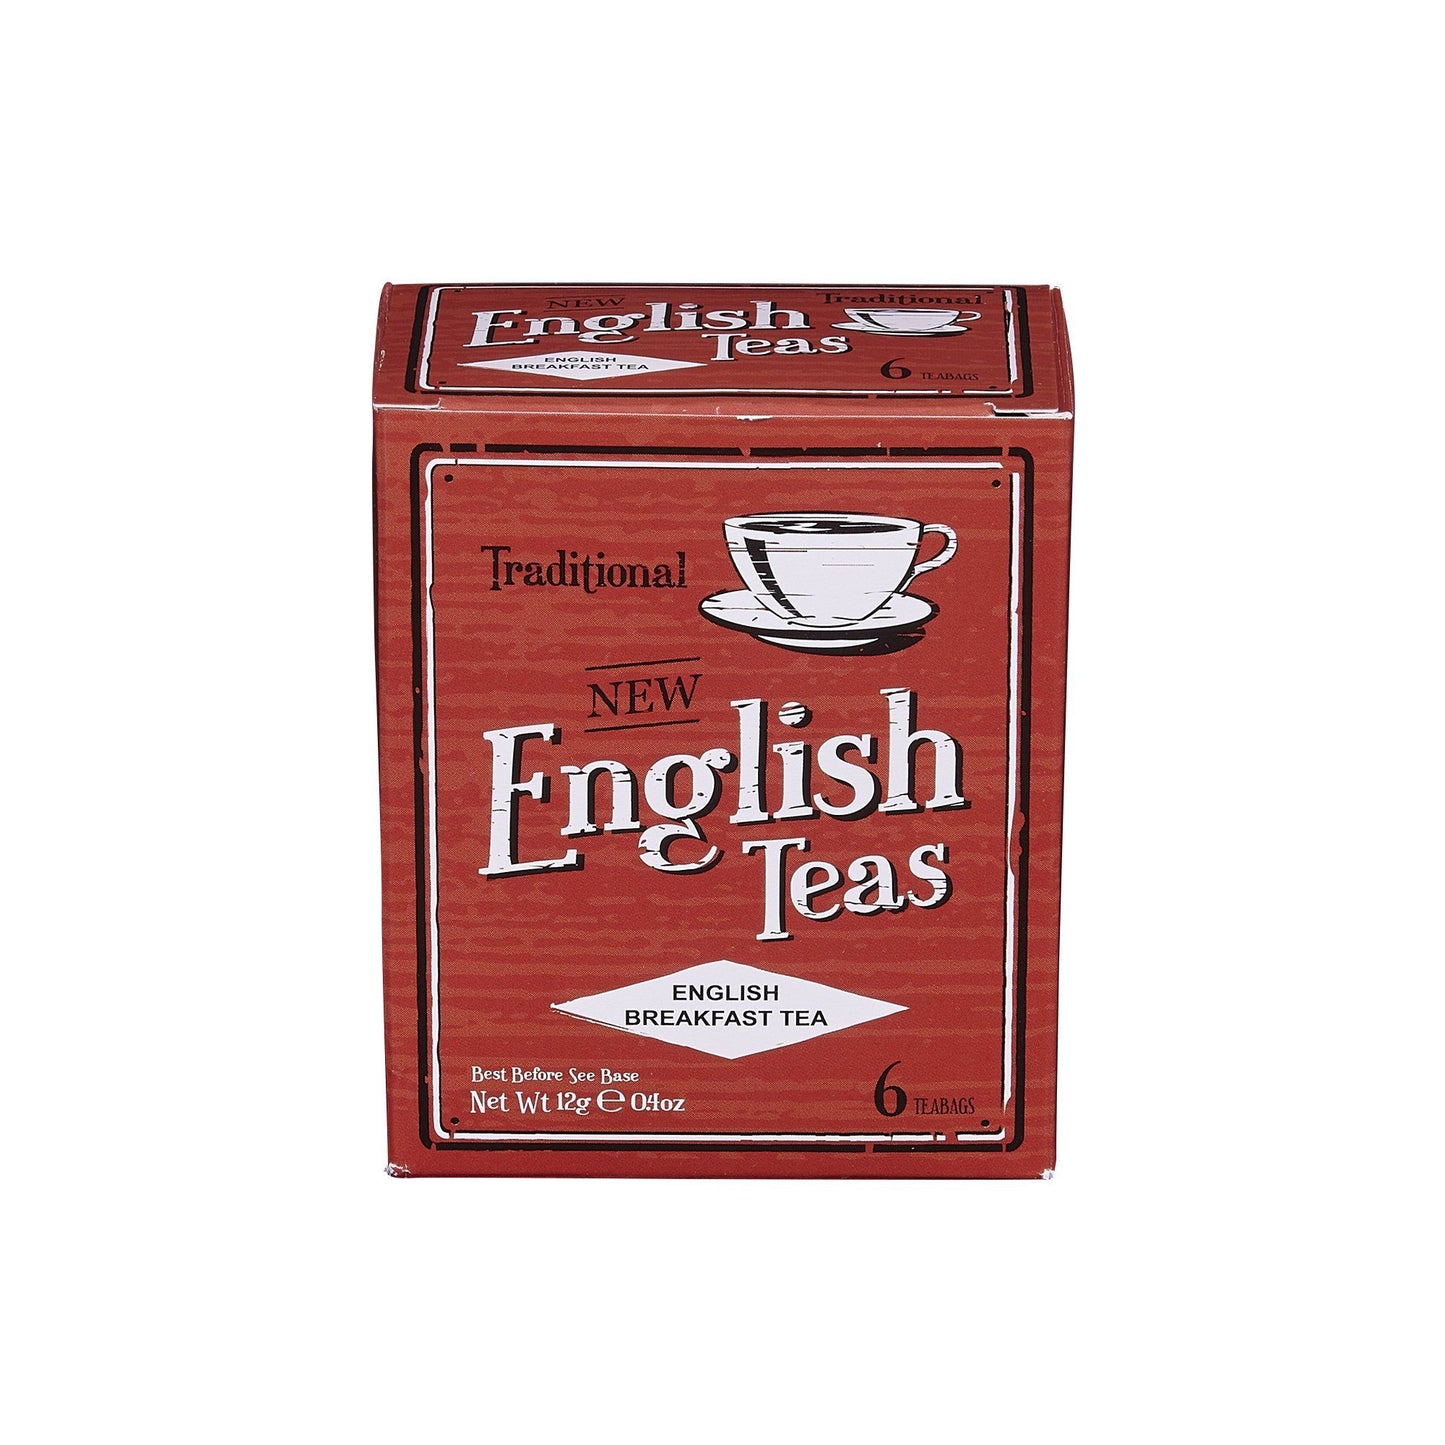 Vintage English Breakfast Tea 6 Teabag Carton Black Tea New English Teas 